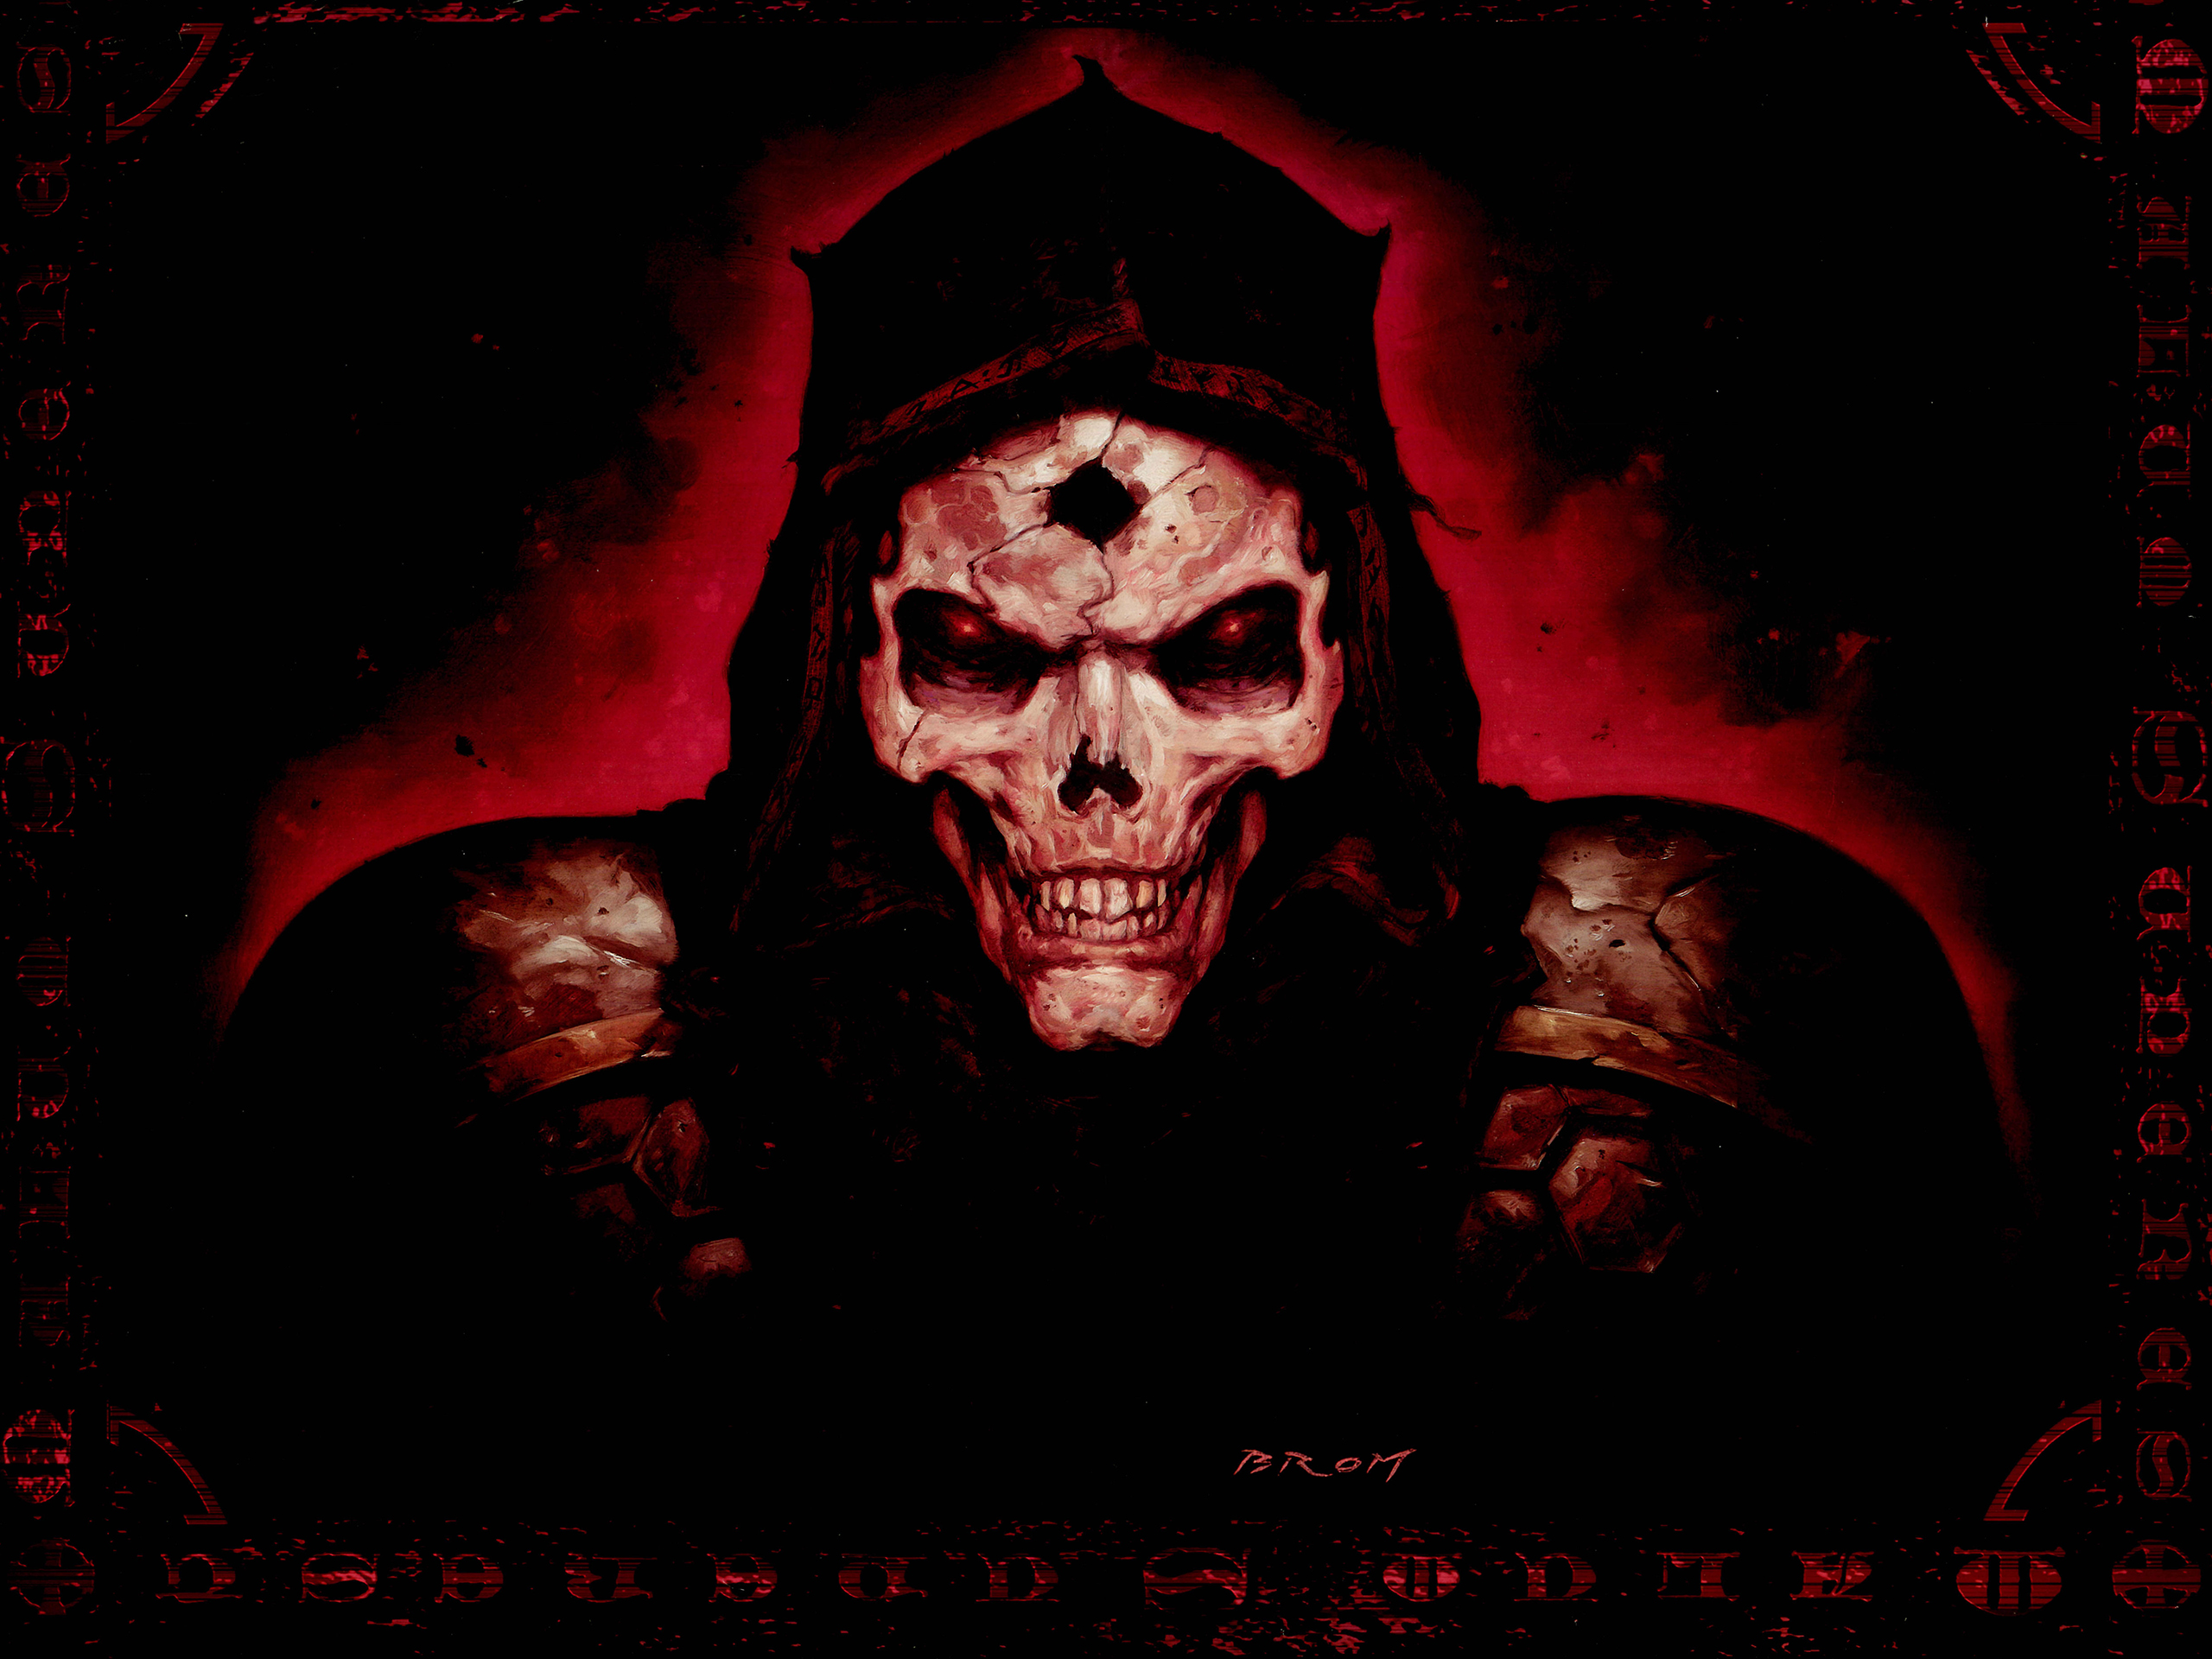 art dark horror skull evil scary spooky creepy face eyes wallpaper